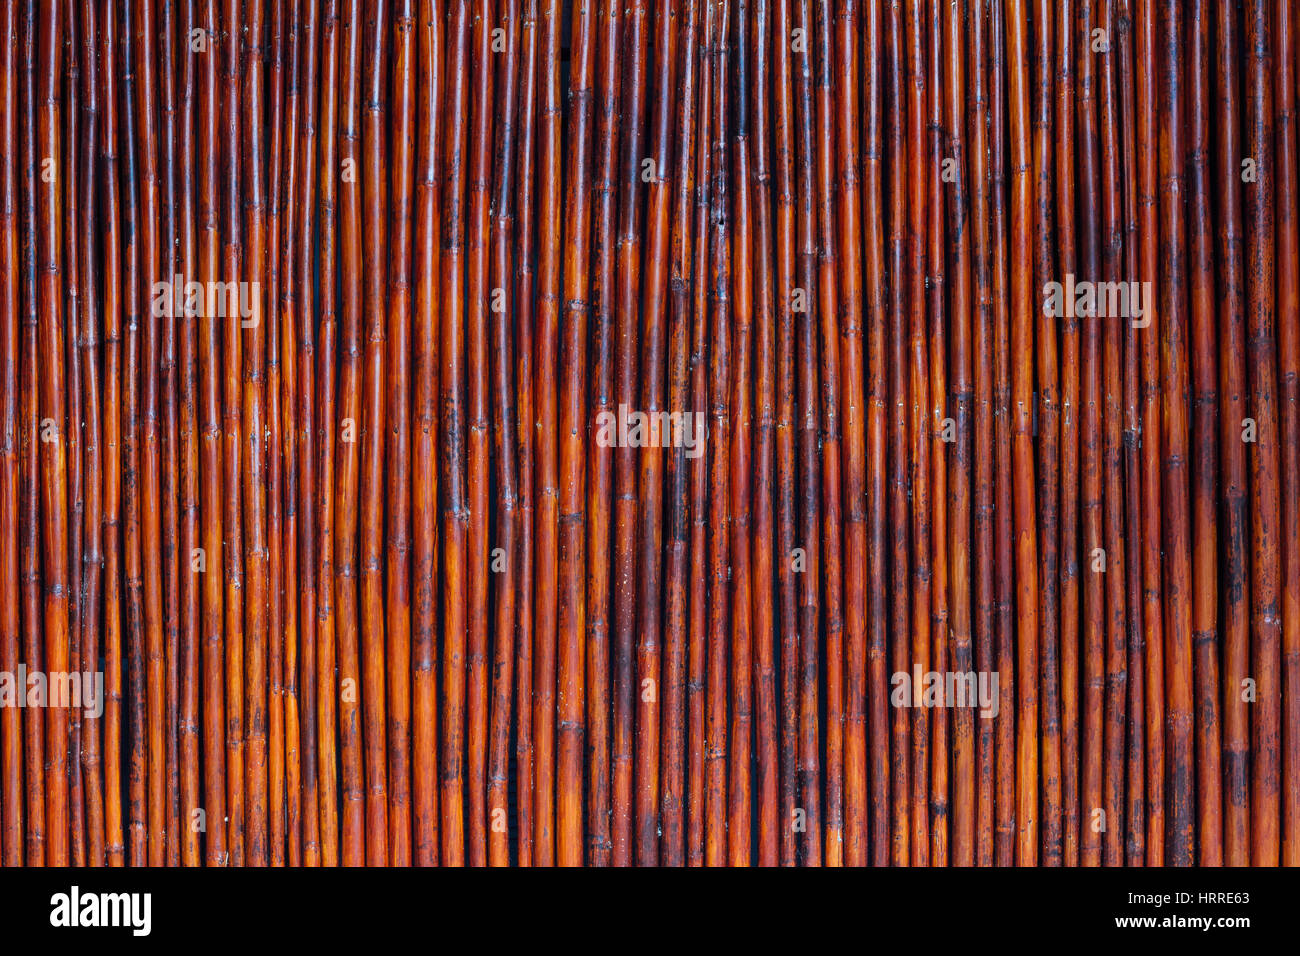 https://c8.alamy.com/comp/HRRE63/old-bamboo-wood-vintage-background-wall-texture-orange-color-HRRE63.jpg